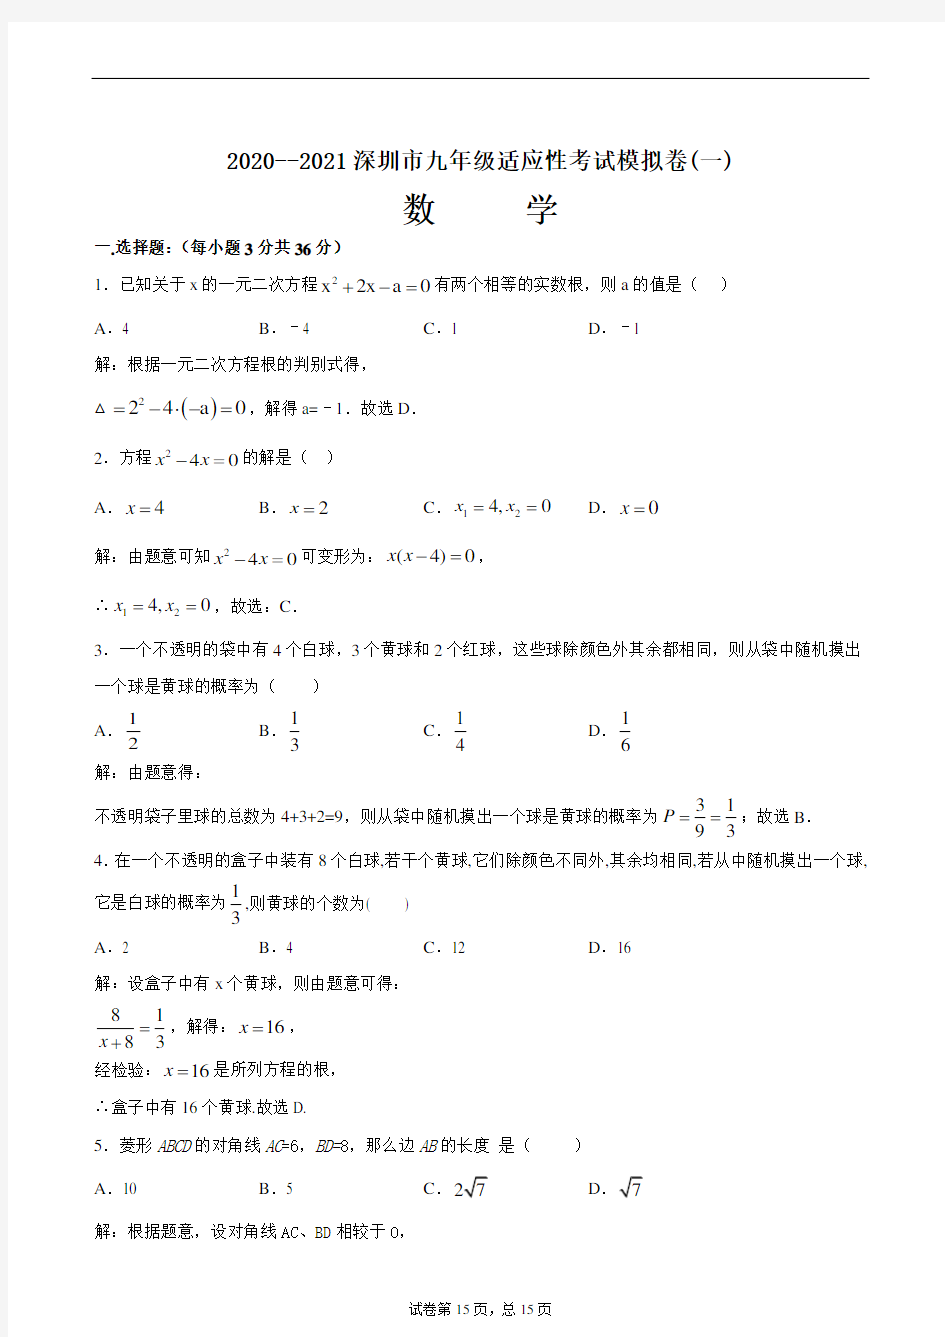 2020--2021深圳市九年级适应考试模拟卷(一)(解析版)